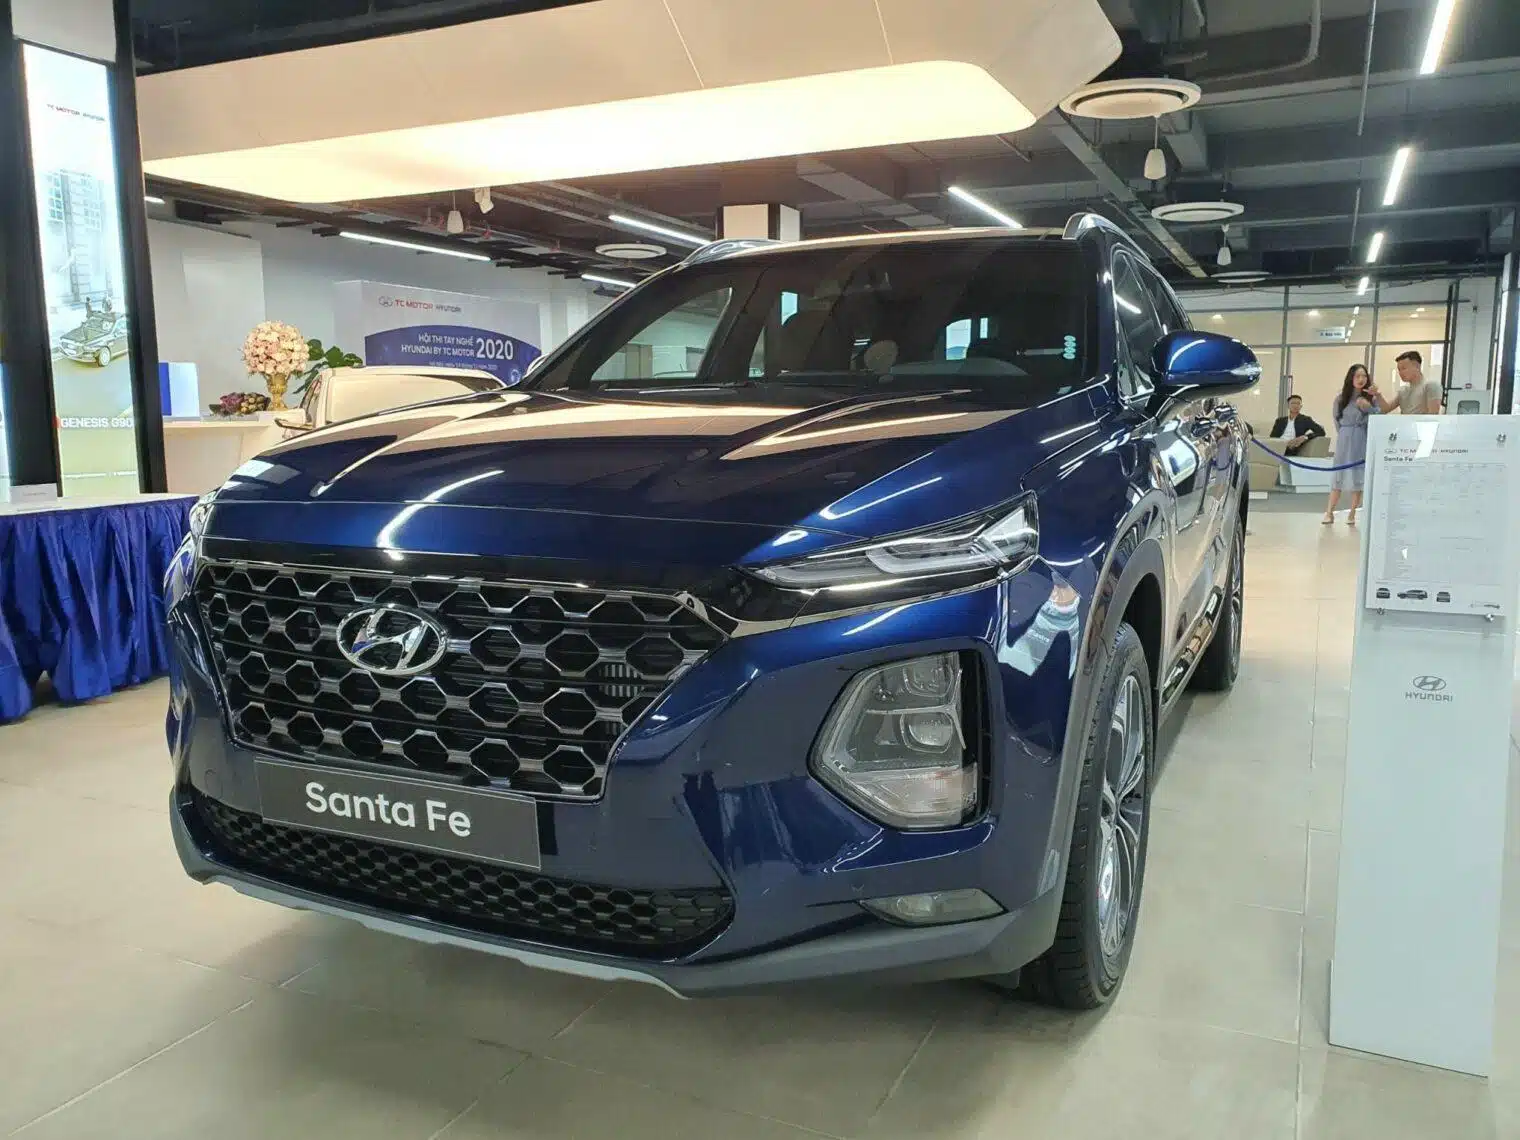 Hyundai SantaFe 2020